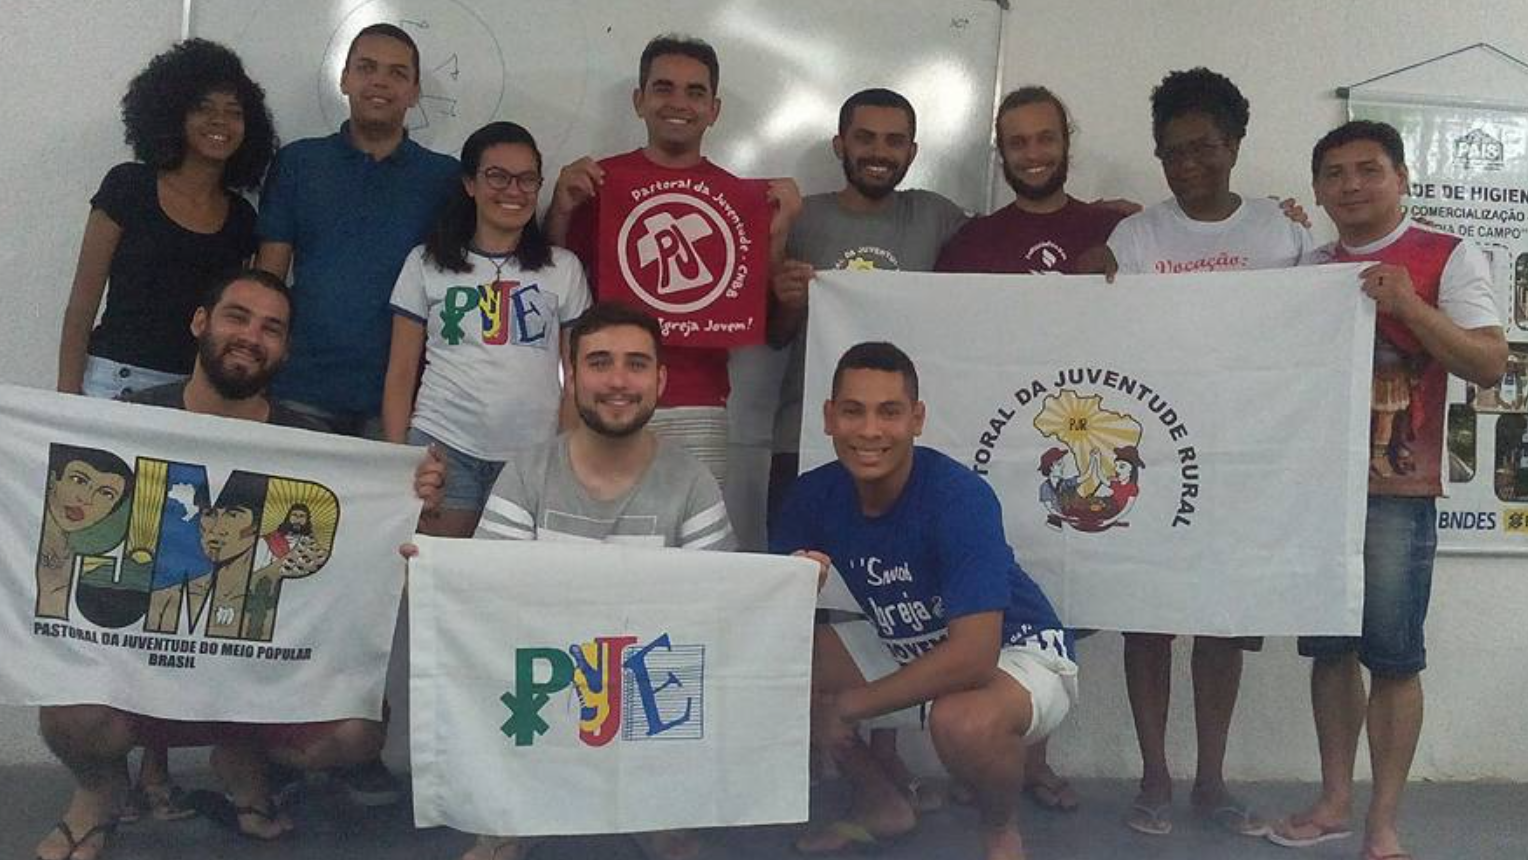  Seminário das Atividades Permanentes acontece em Pernambuco!